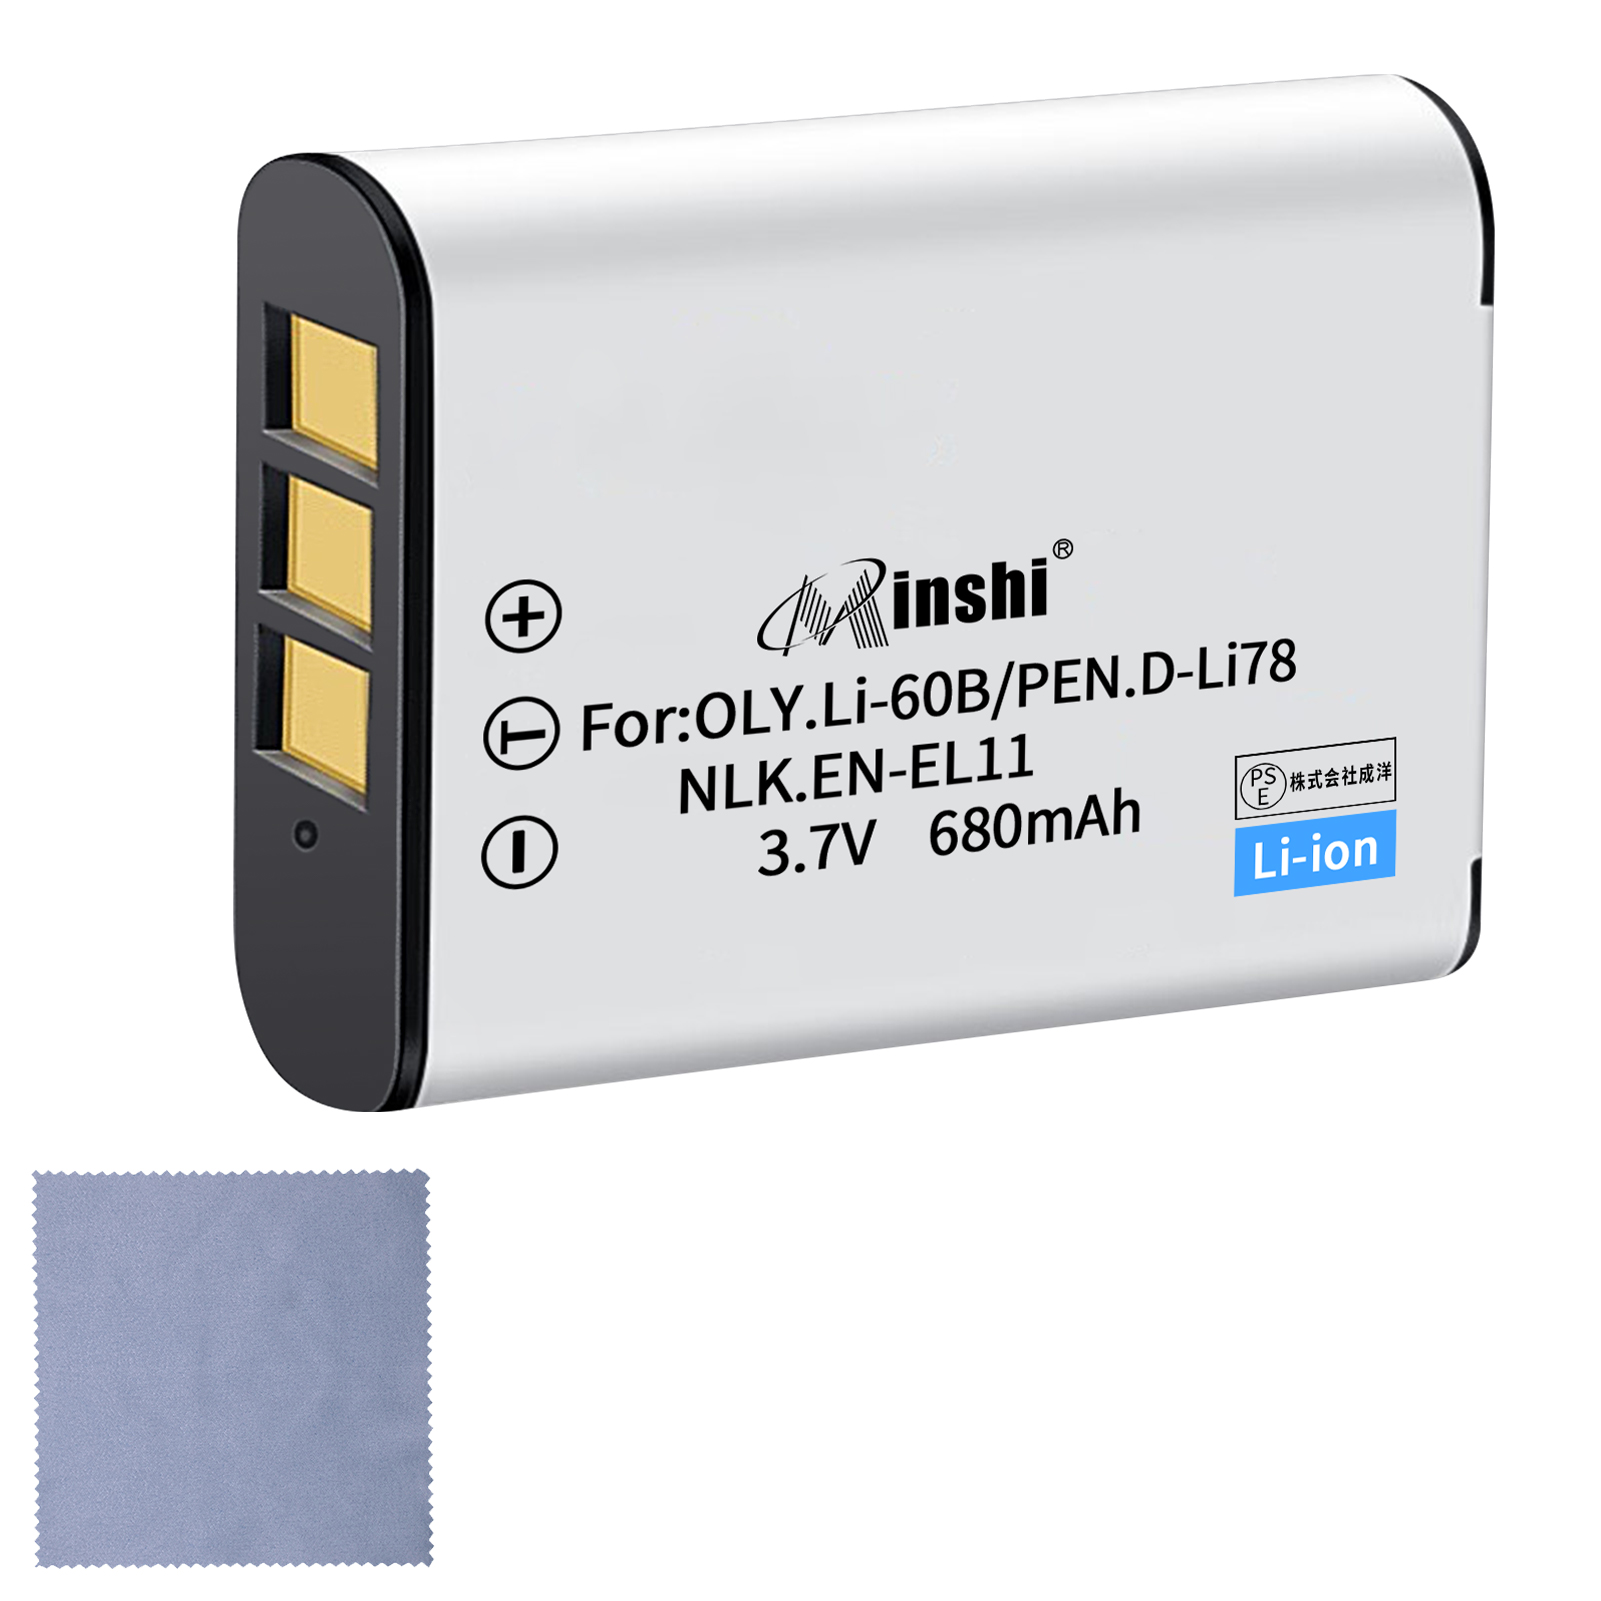 【クロス付き】minshi NIKON D-LI78【680mAh 3.7V】PSE認定済 高品質交換用バッテリー オリジナル充電器との互換性がない